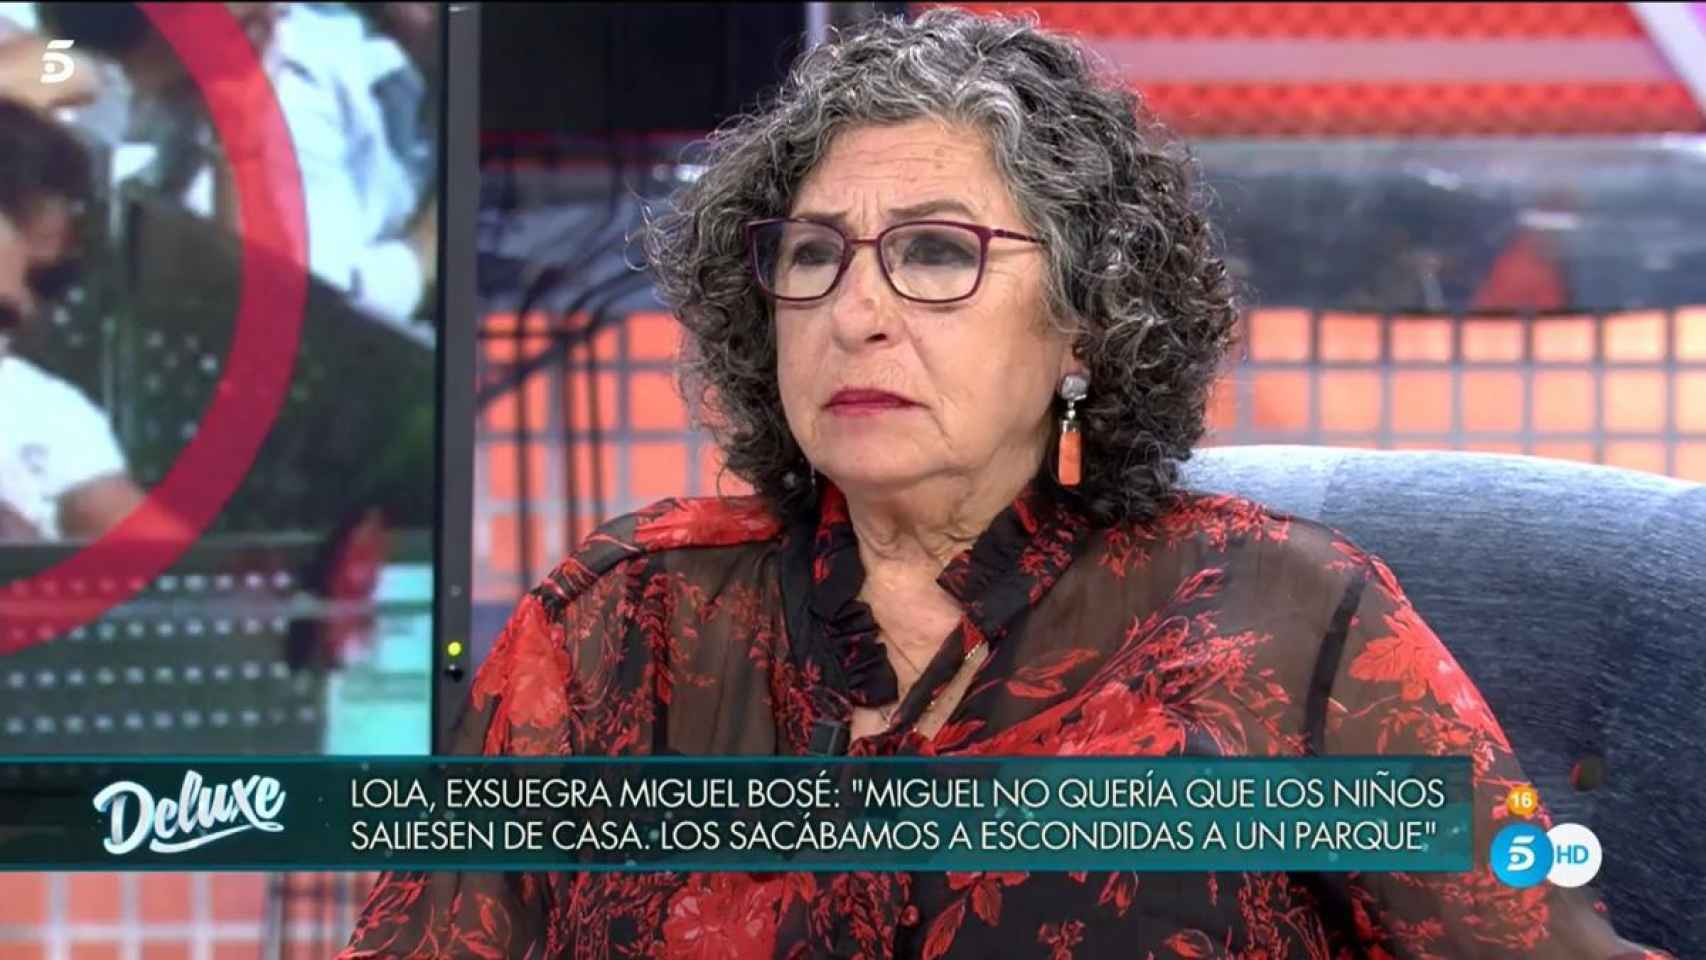 La madre de Nacho Palau visitó el 'Deluxe' para hablar de la separación de su hijo y Miguel Bosé.